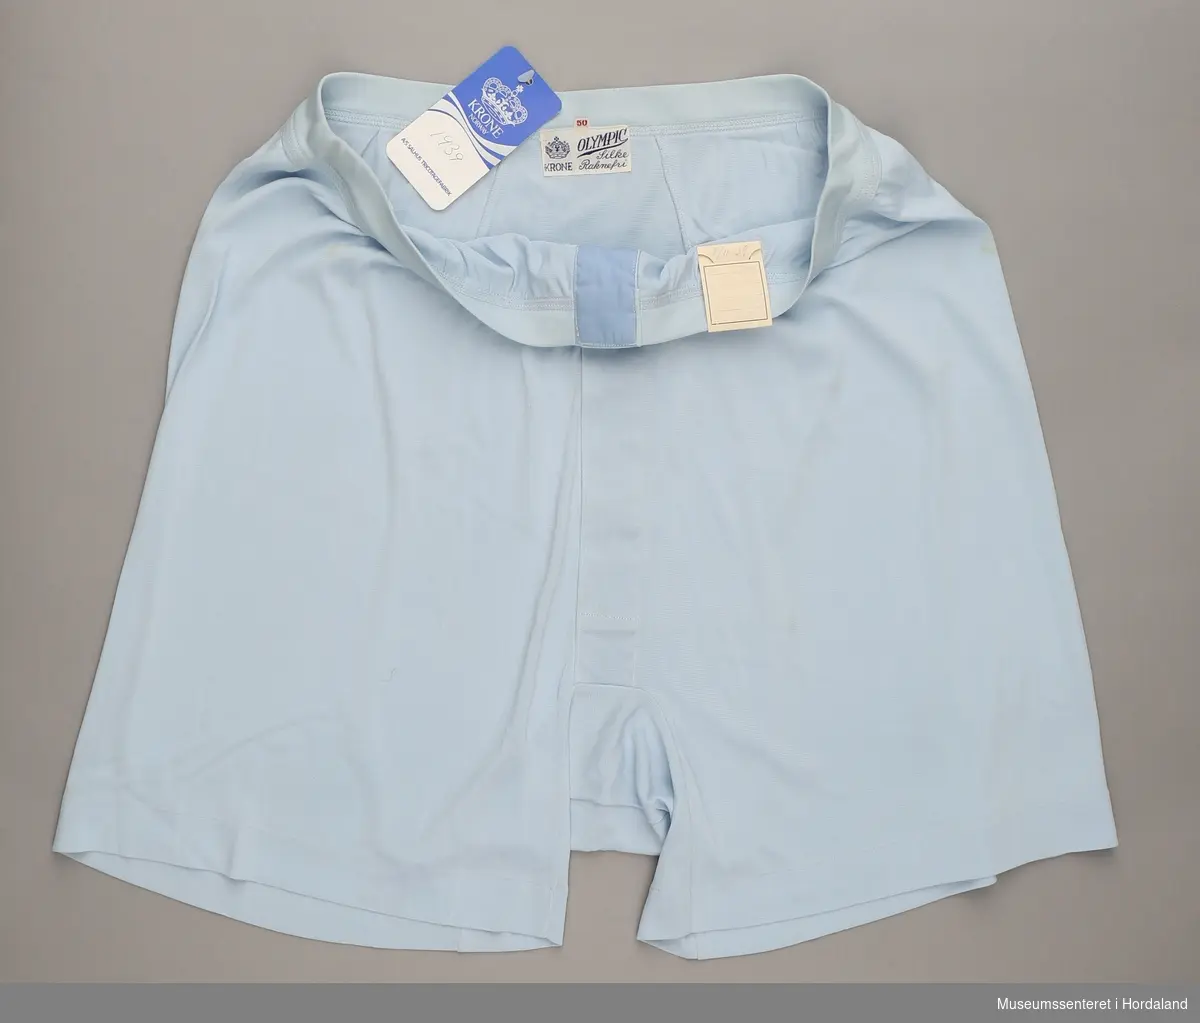 Lys blå underbukse i kortbukseform i merket Krone Olympic, med opning framme. Angiveleg strikka i "raknefri" silke.